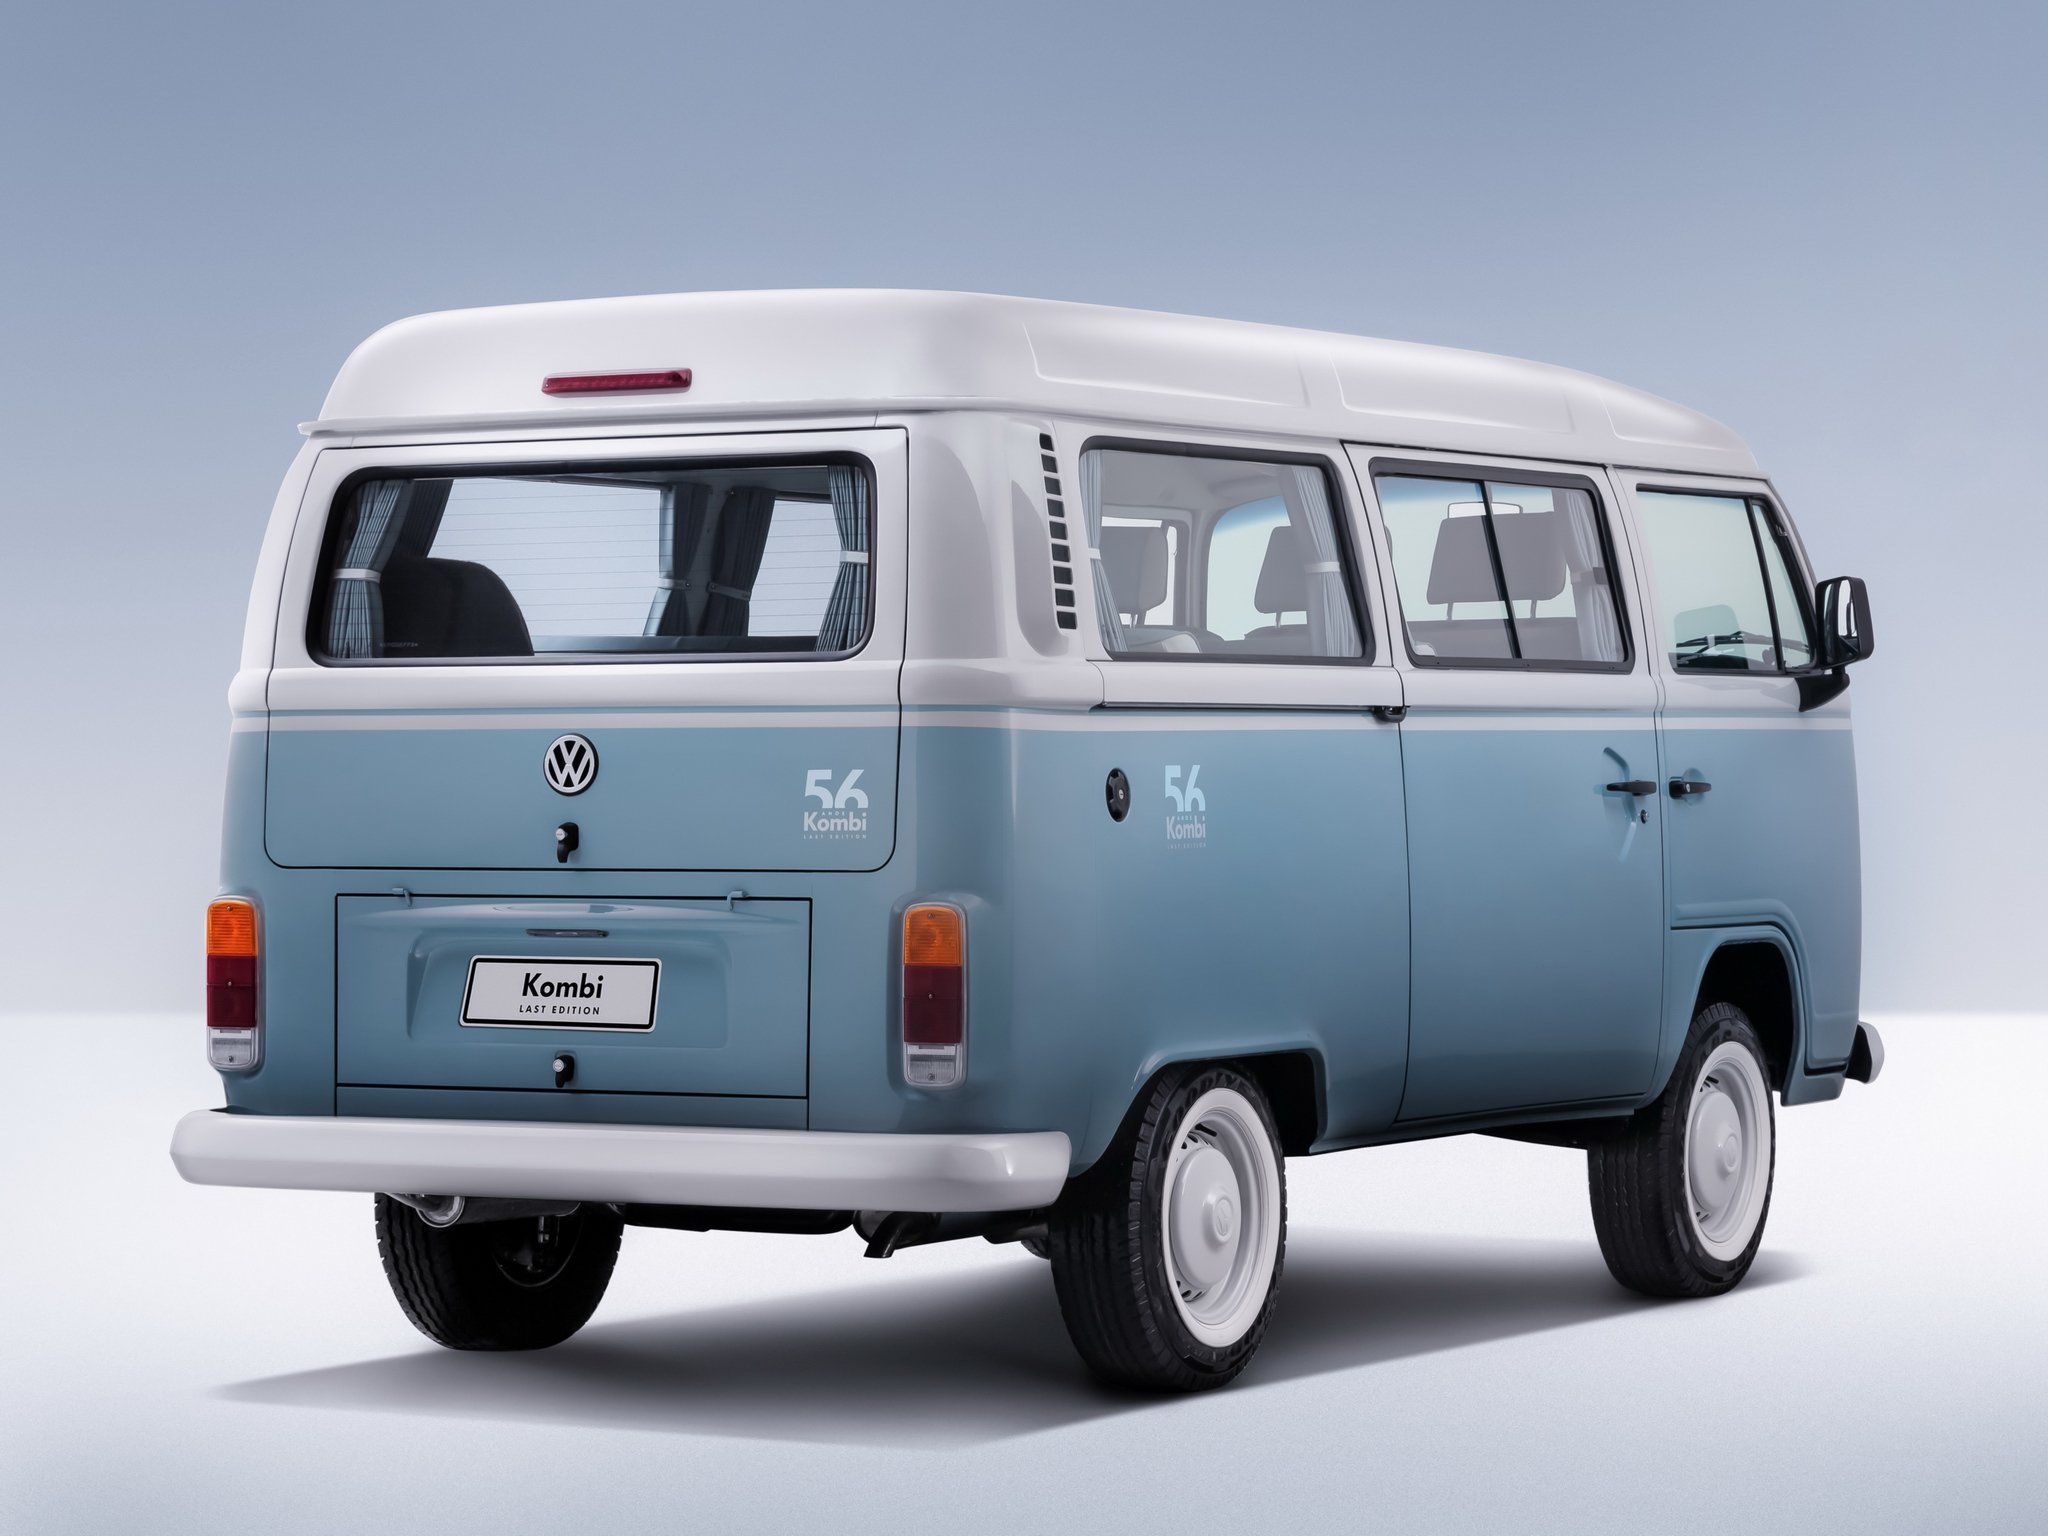 2013, Volkswagen, Kombi, Last, Edition, Bus, Van, Rt Wallpaper